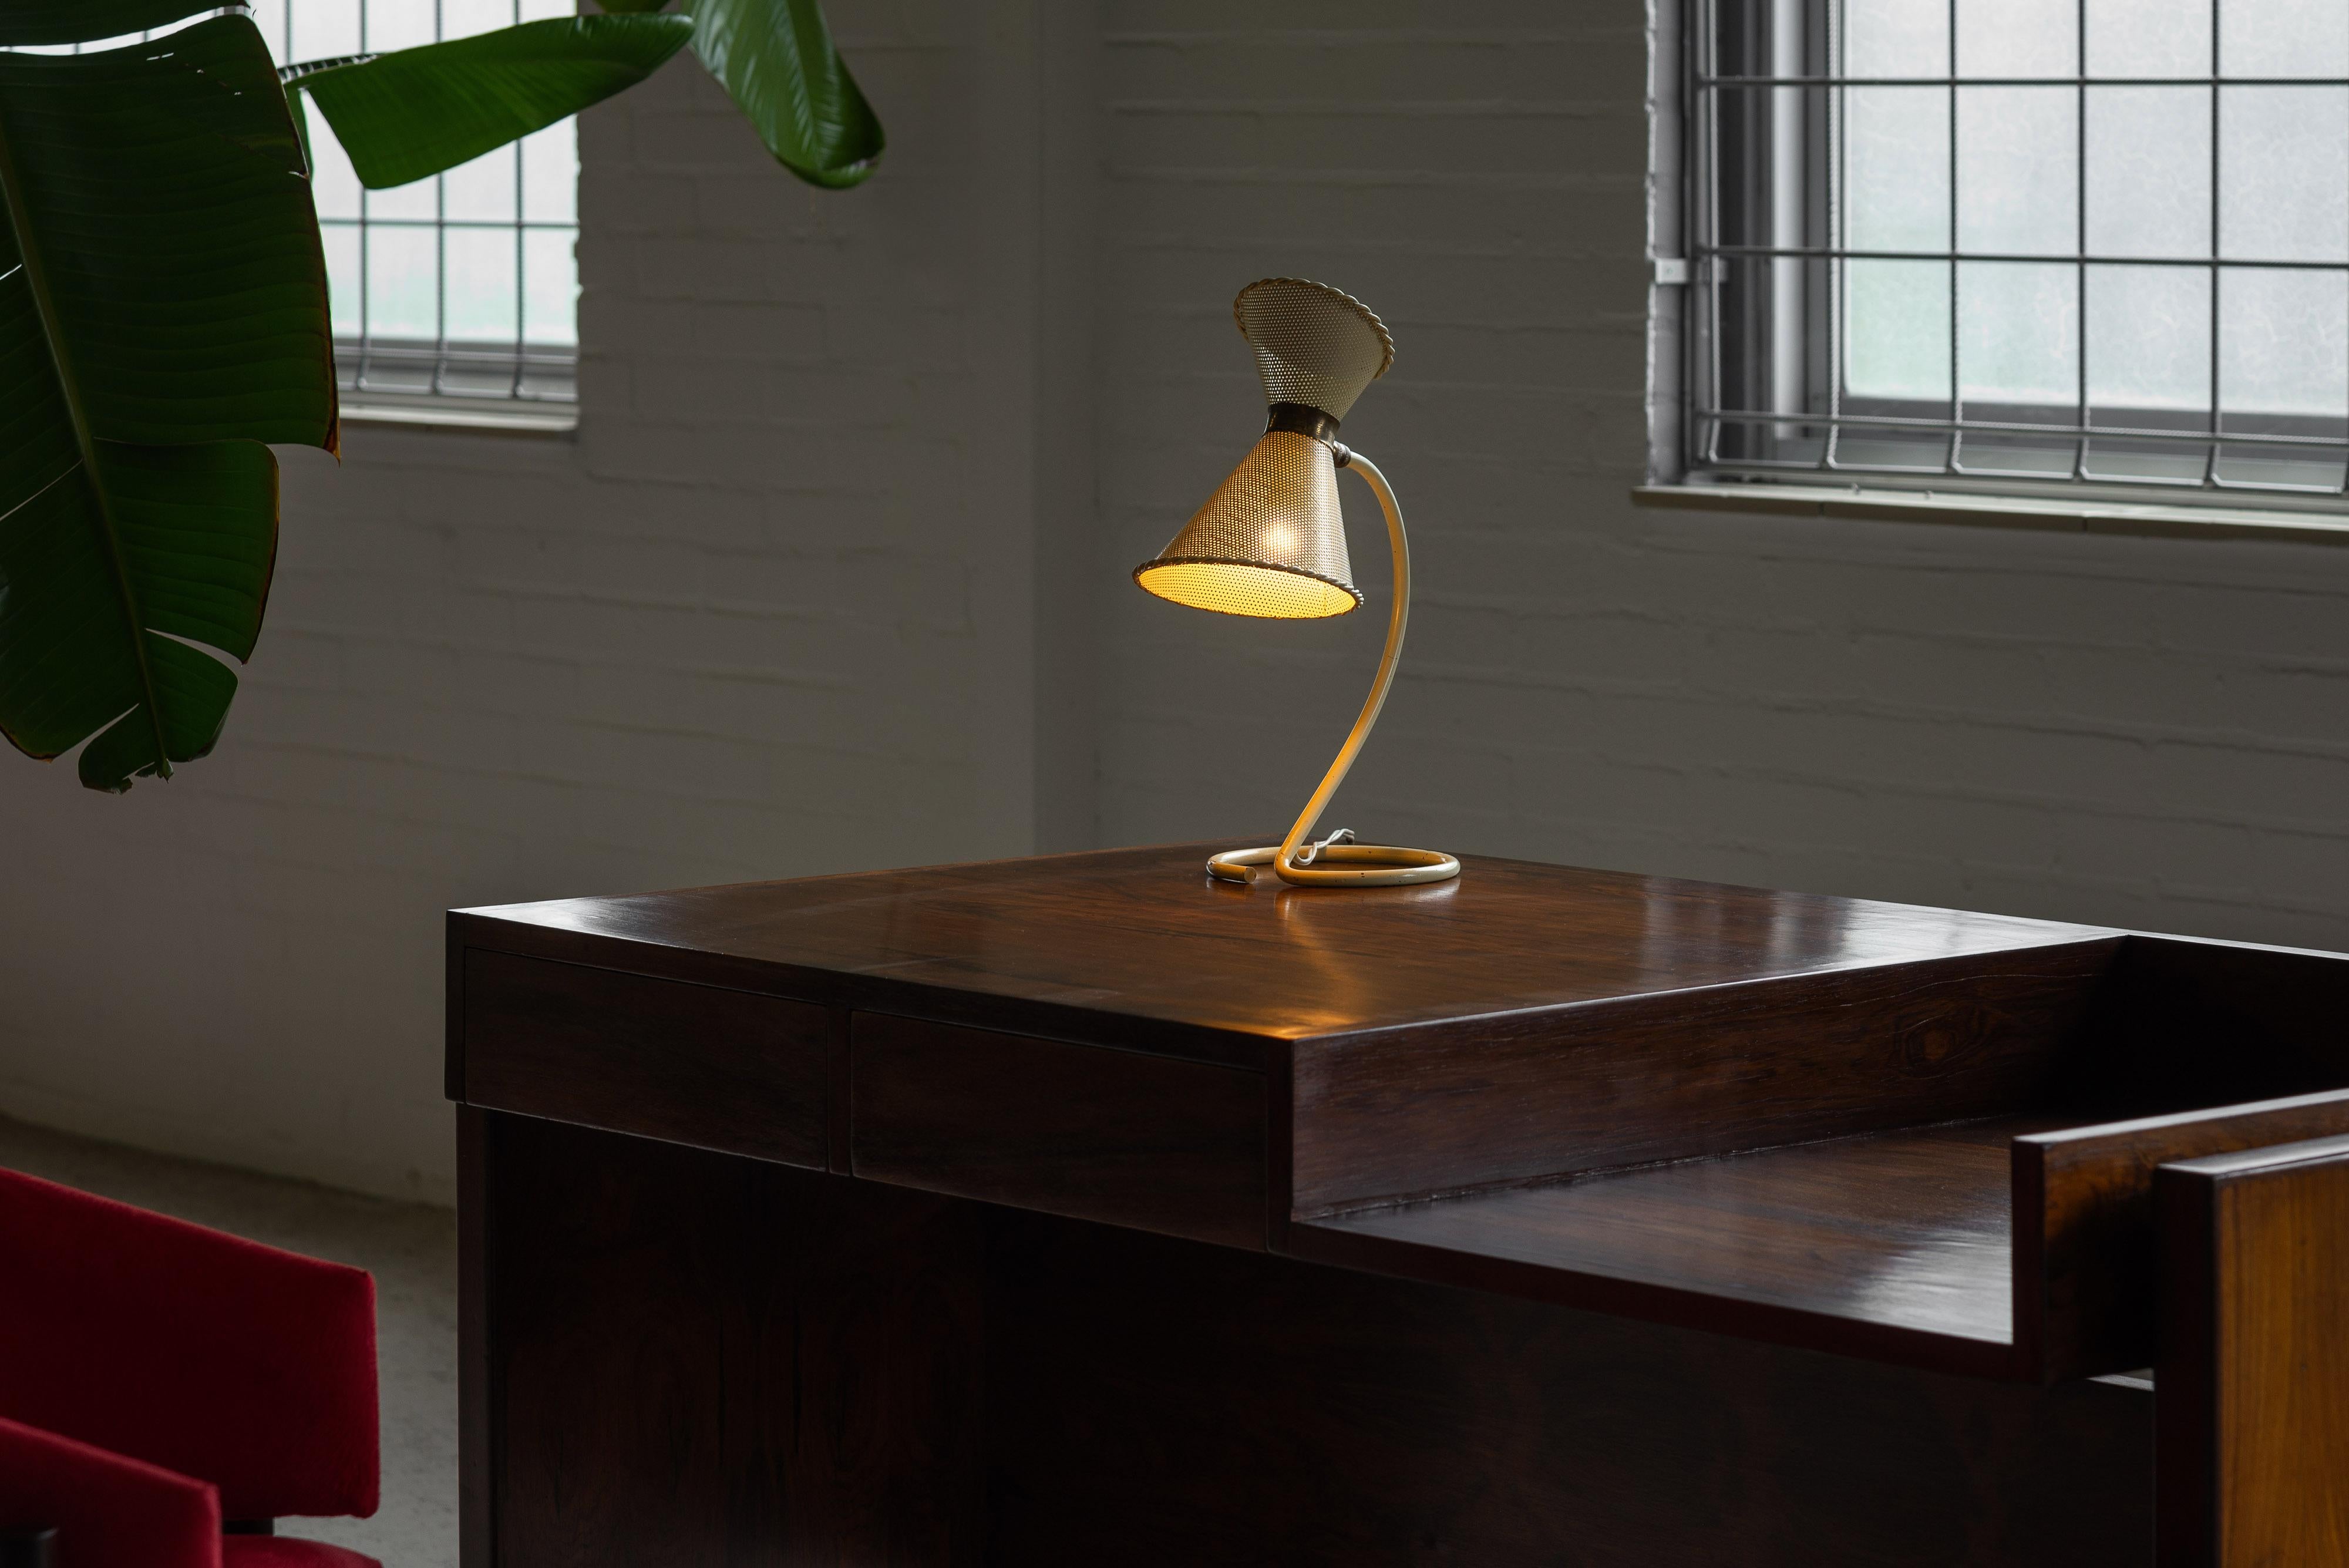 Charmante lampe de table jaune conçue par Mathieu Matégot et fabriquée par les Ateliers Matégot en France en 1950. Cette lampe de table est en métal, et son abat-jour est créé avec la technique Rigitulle, un métal découpé à l'emporte-pièce, ce qui